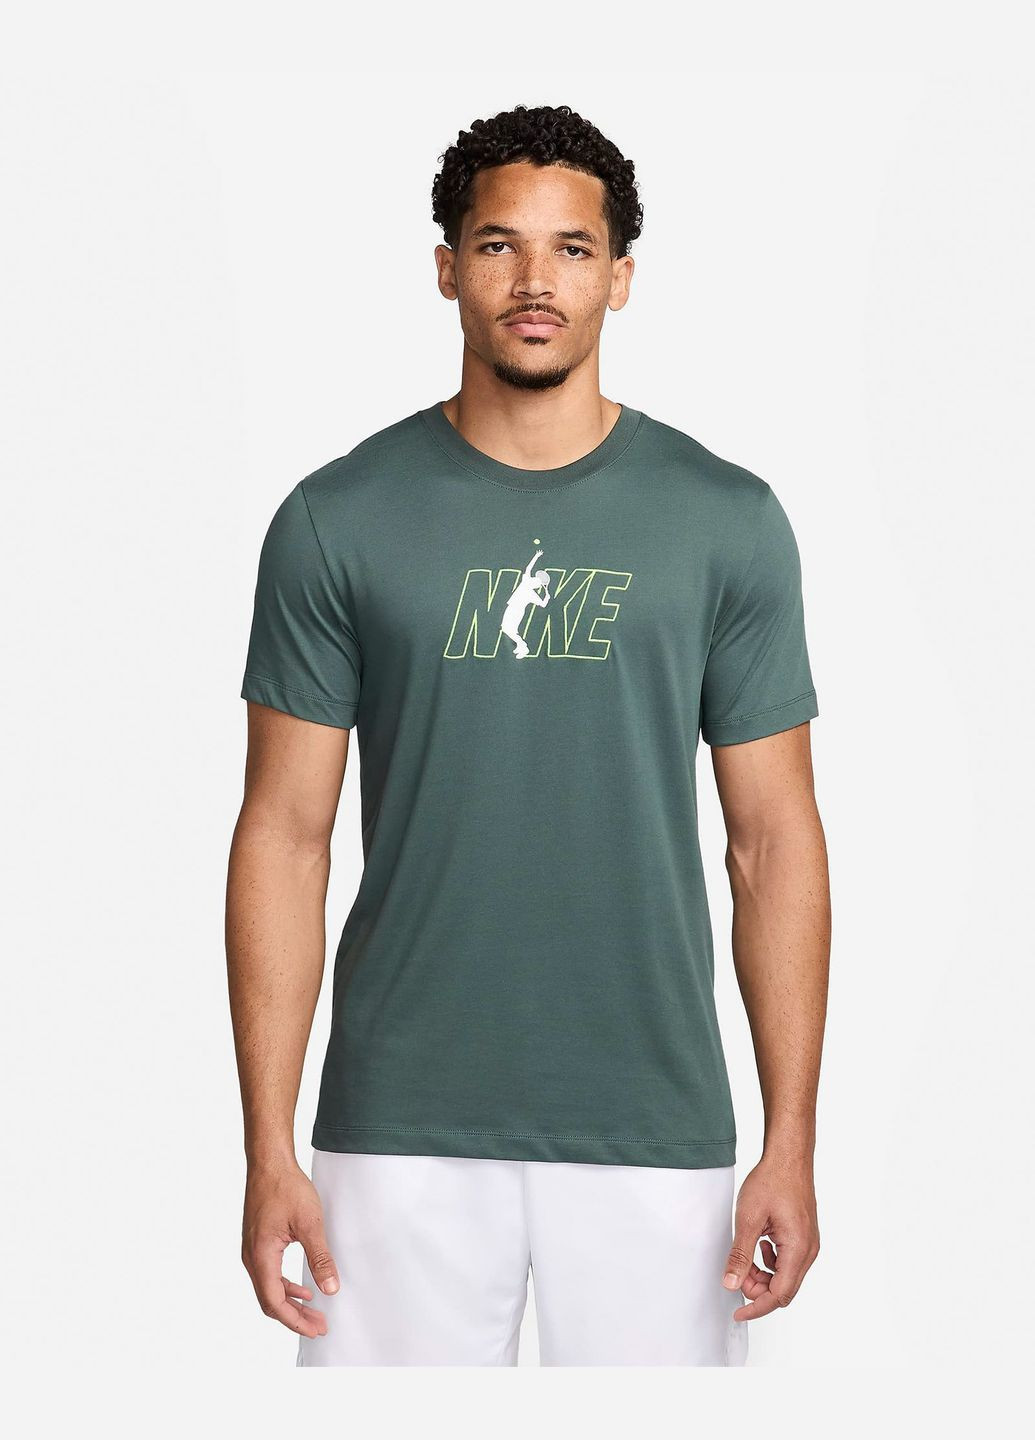 Зелена футболка чоловіча court dri-fit tennis t-hirt fv8434-338 зелена Nike